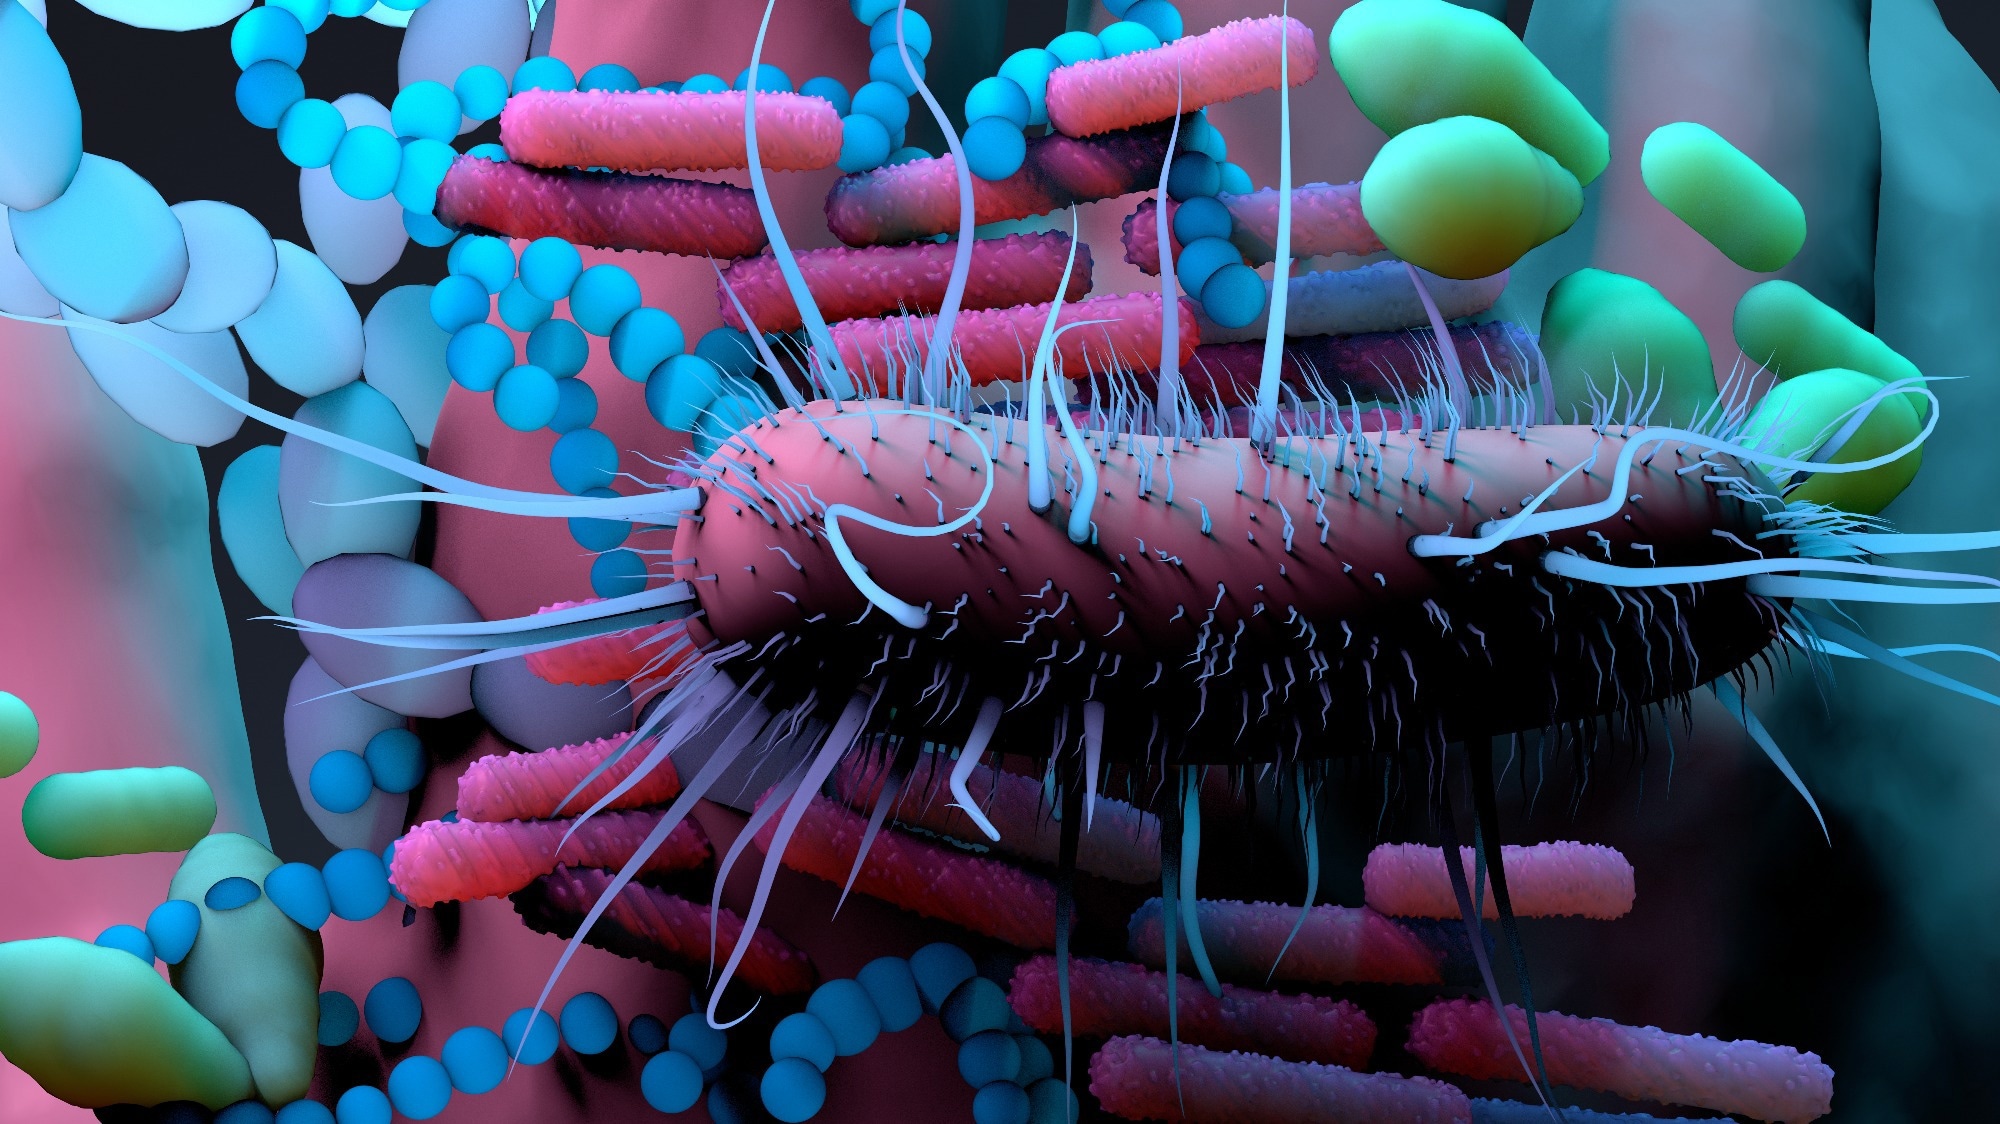 بررسی: دیدگاه های جدید در میکروبیوم واژن با زیست شناسی سیستم ها  اعتبار تصویر: Design_Cells / Shutterstock